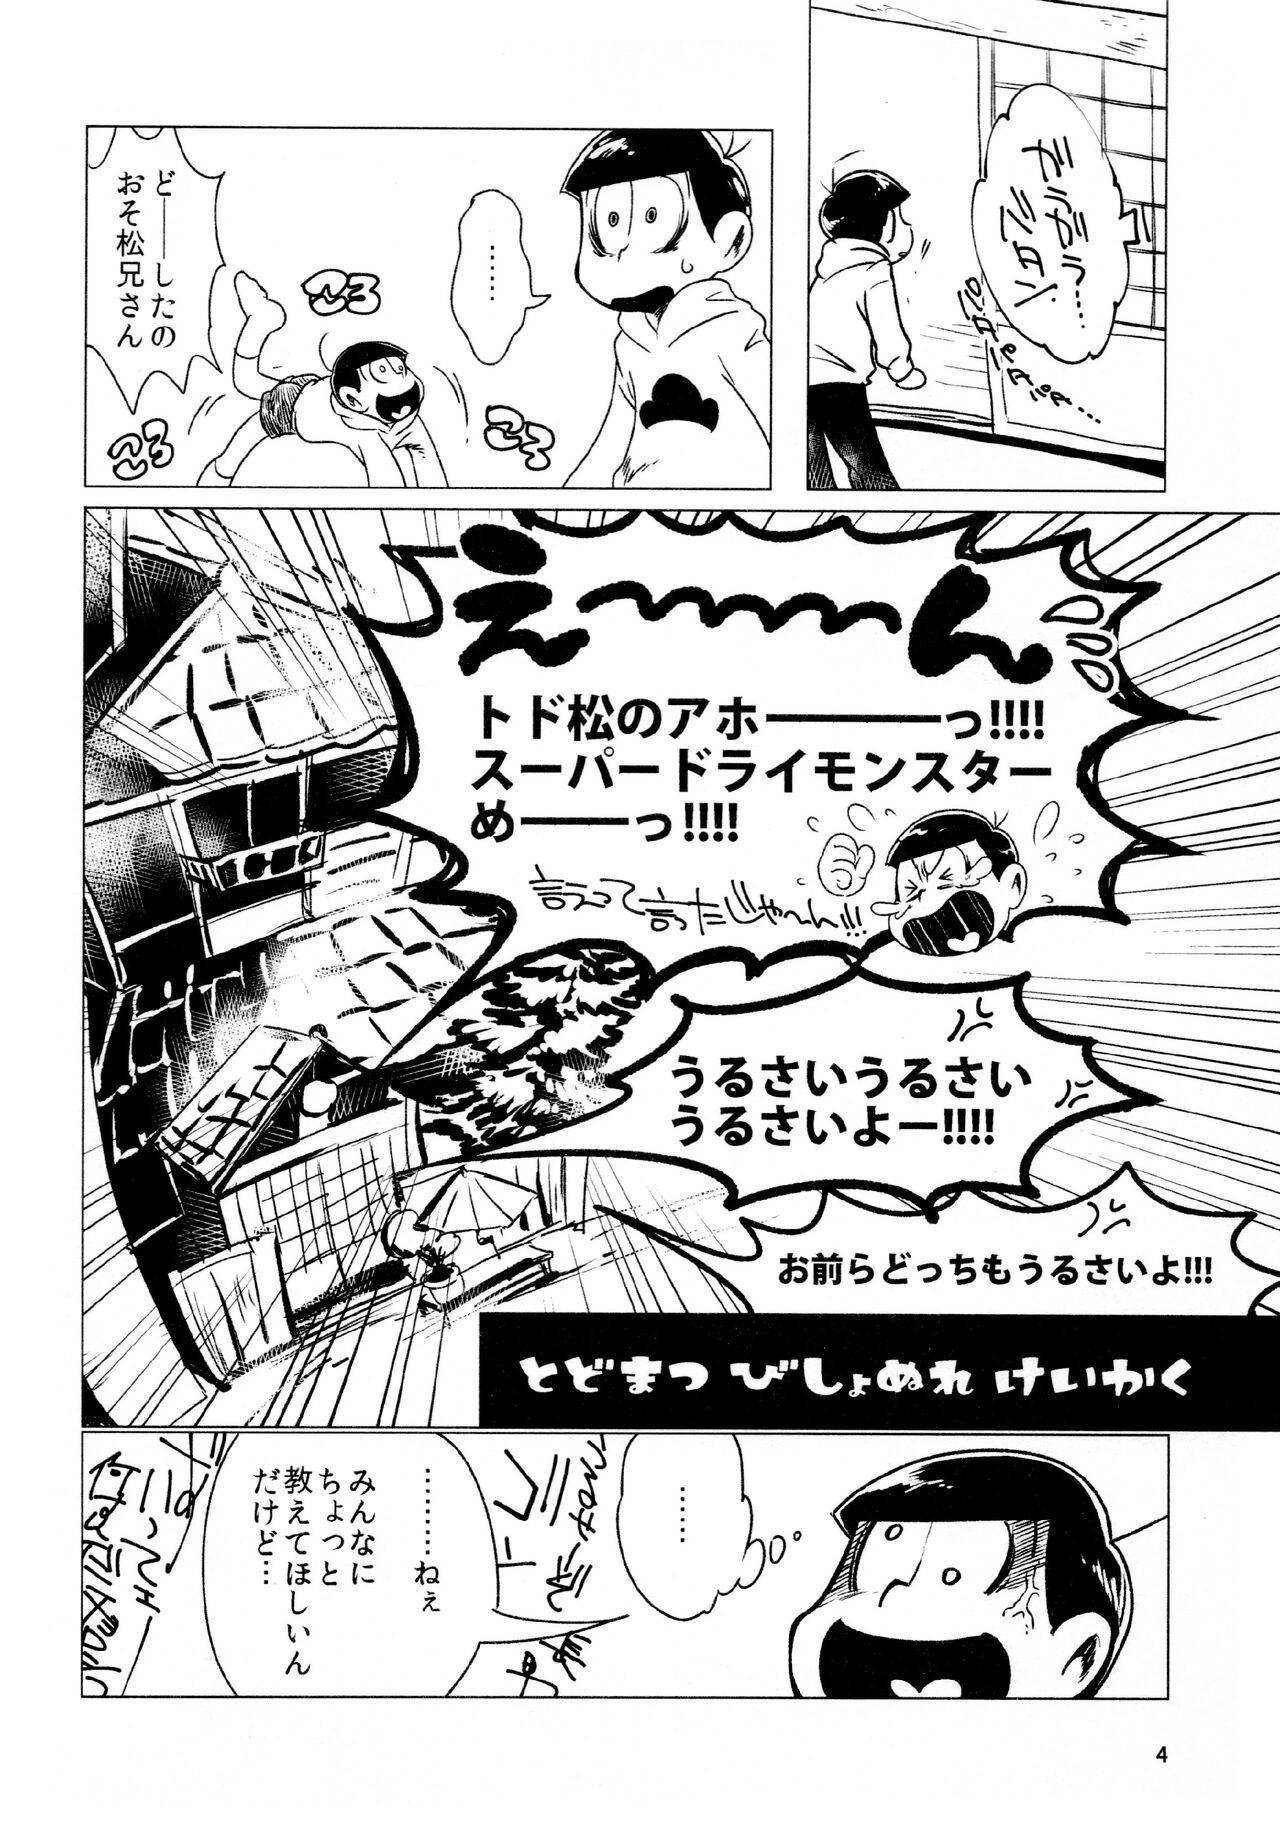 Sola todomatsu bishi yonurekeikaku - Osomatsu-san Hidden - Page 4